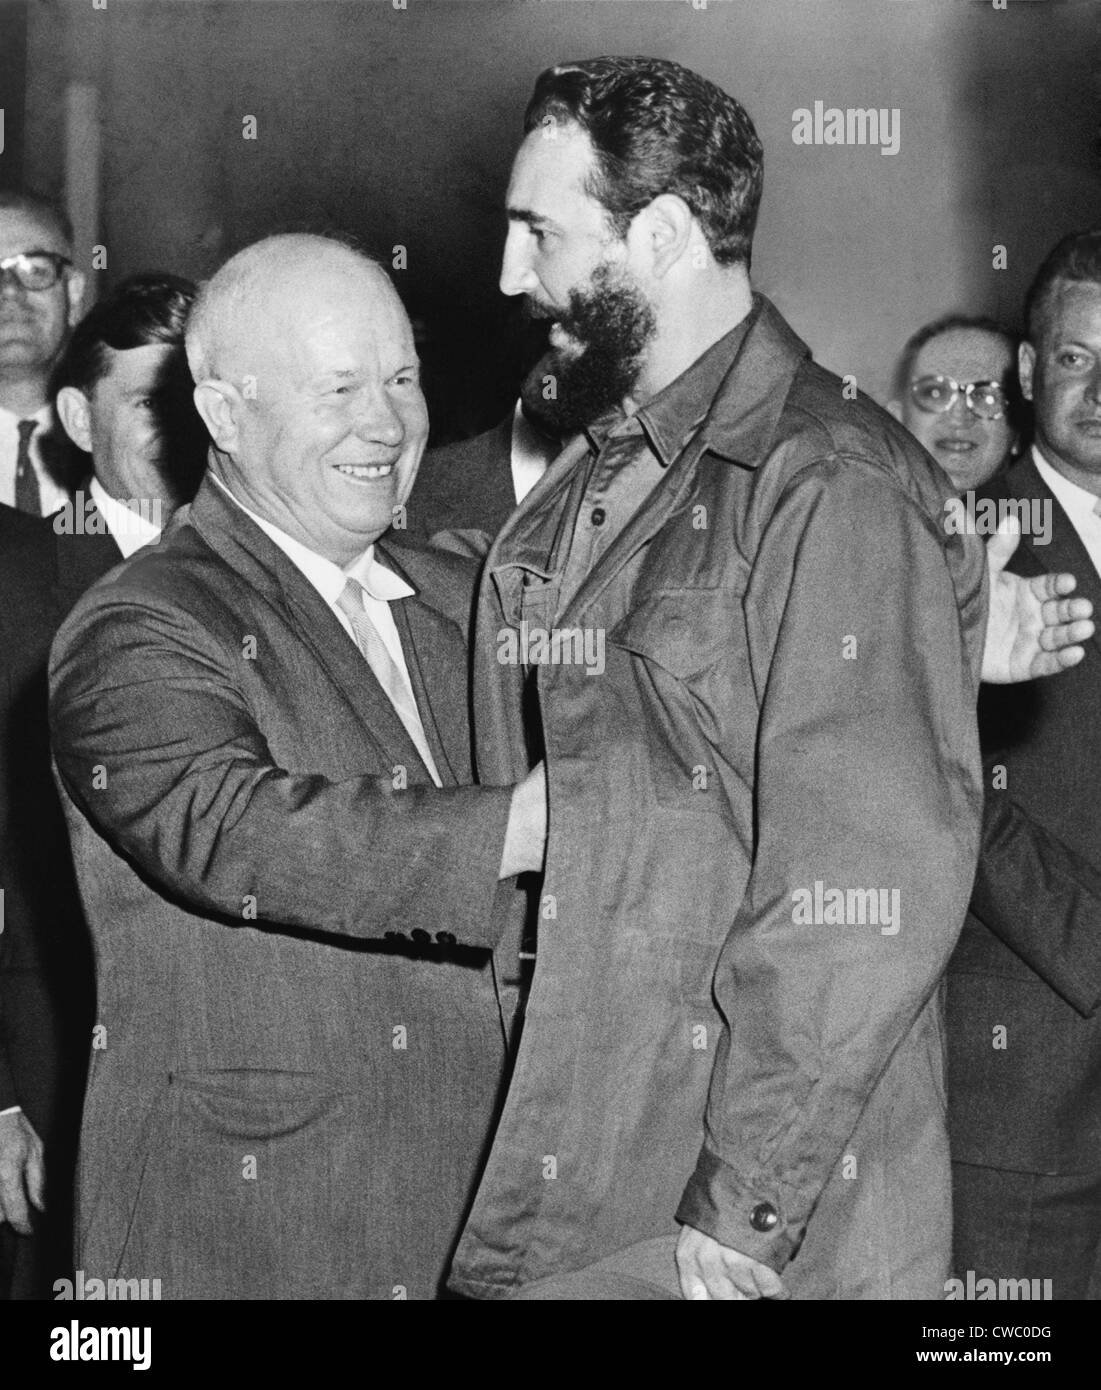 Fidel Castro's Wild New York Visit